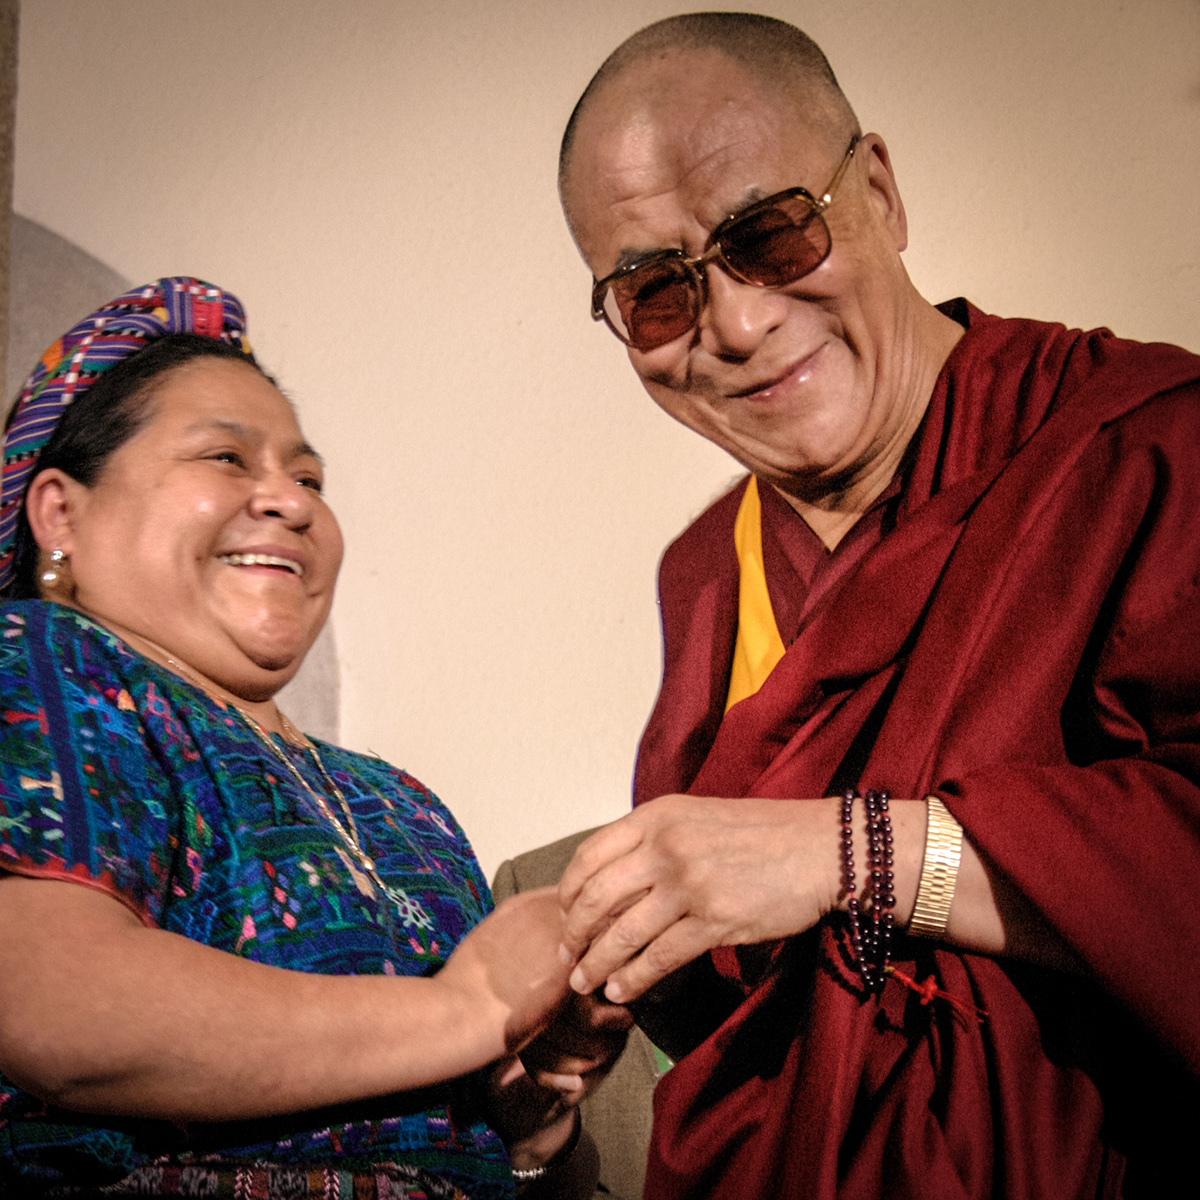 dalai Dalai Lama Rigoberta Rigoberta Menchu Menchu LAMA Guatemala premio nobel paz Nobel Prize peace tibet Daniel Urrutia danielurrutia.wix.com/camera-photo